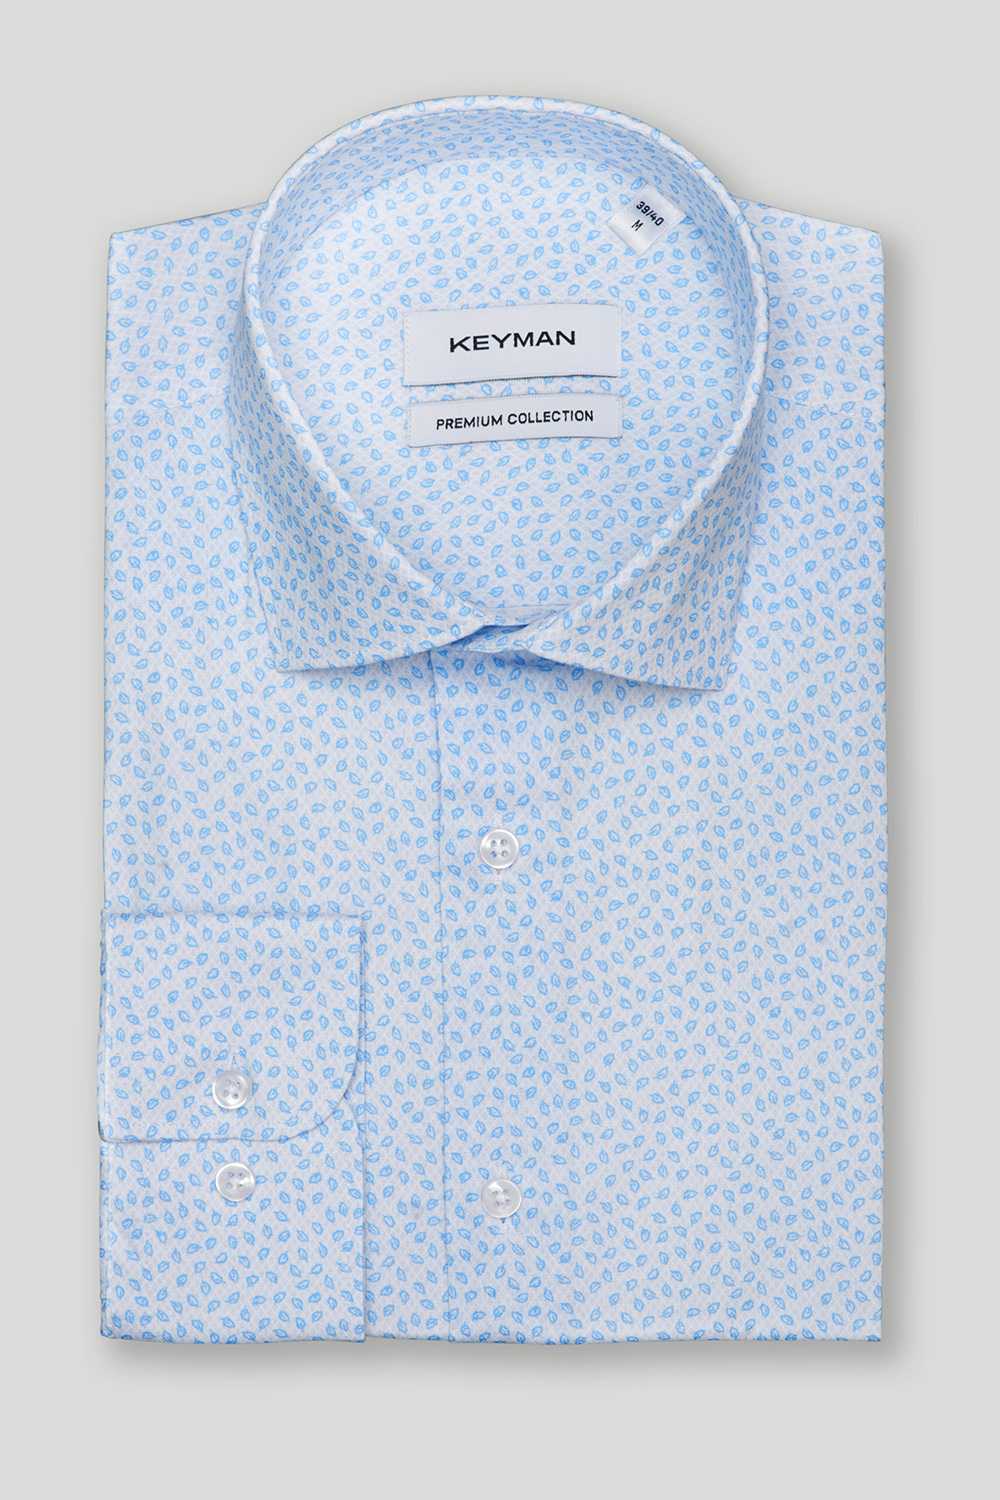 Рубашка (сорочка) мужская белая, в голубой узор "листики" с эластаном